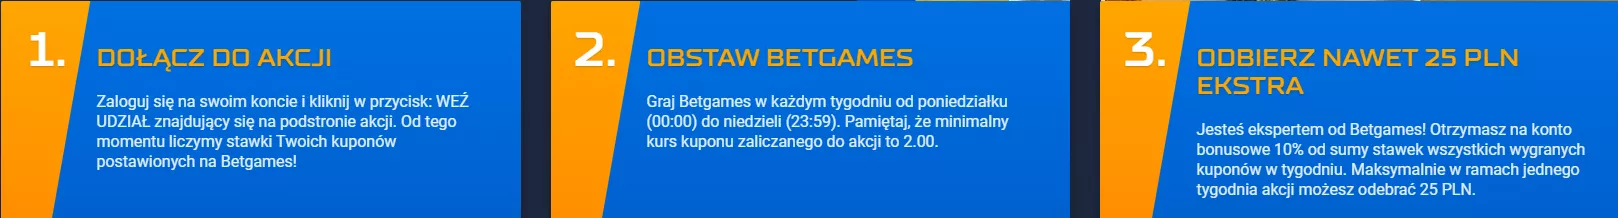 Bezpieczne 25 PLN na BetGames - jak dołączyć do akcji bonusowej STSu